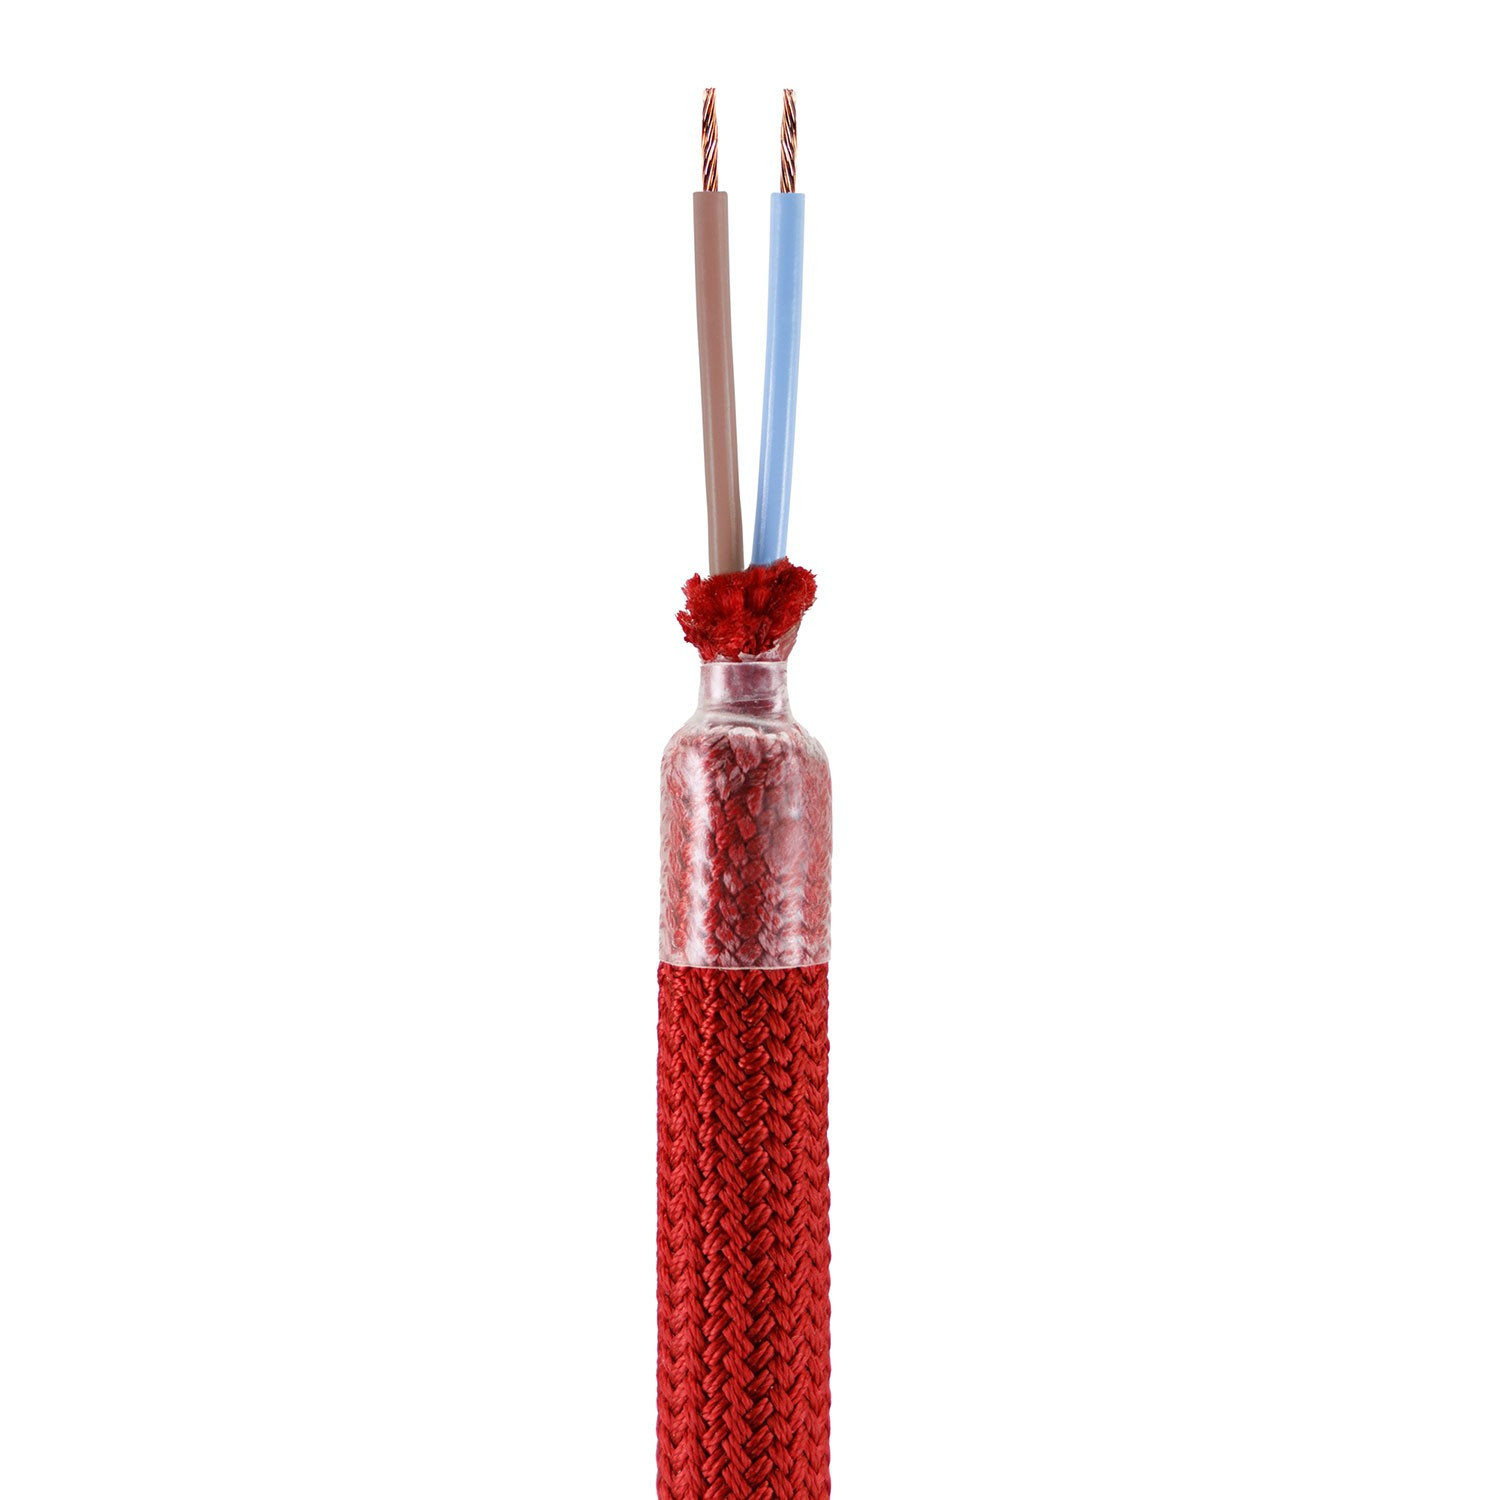 Kit Creative Flex tubo flessibile di estensione rivestito in tessuto RM09 Rosso con terminali metallici